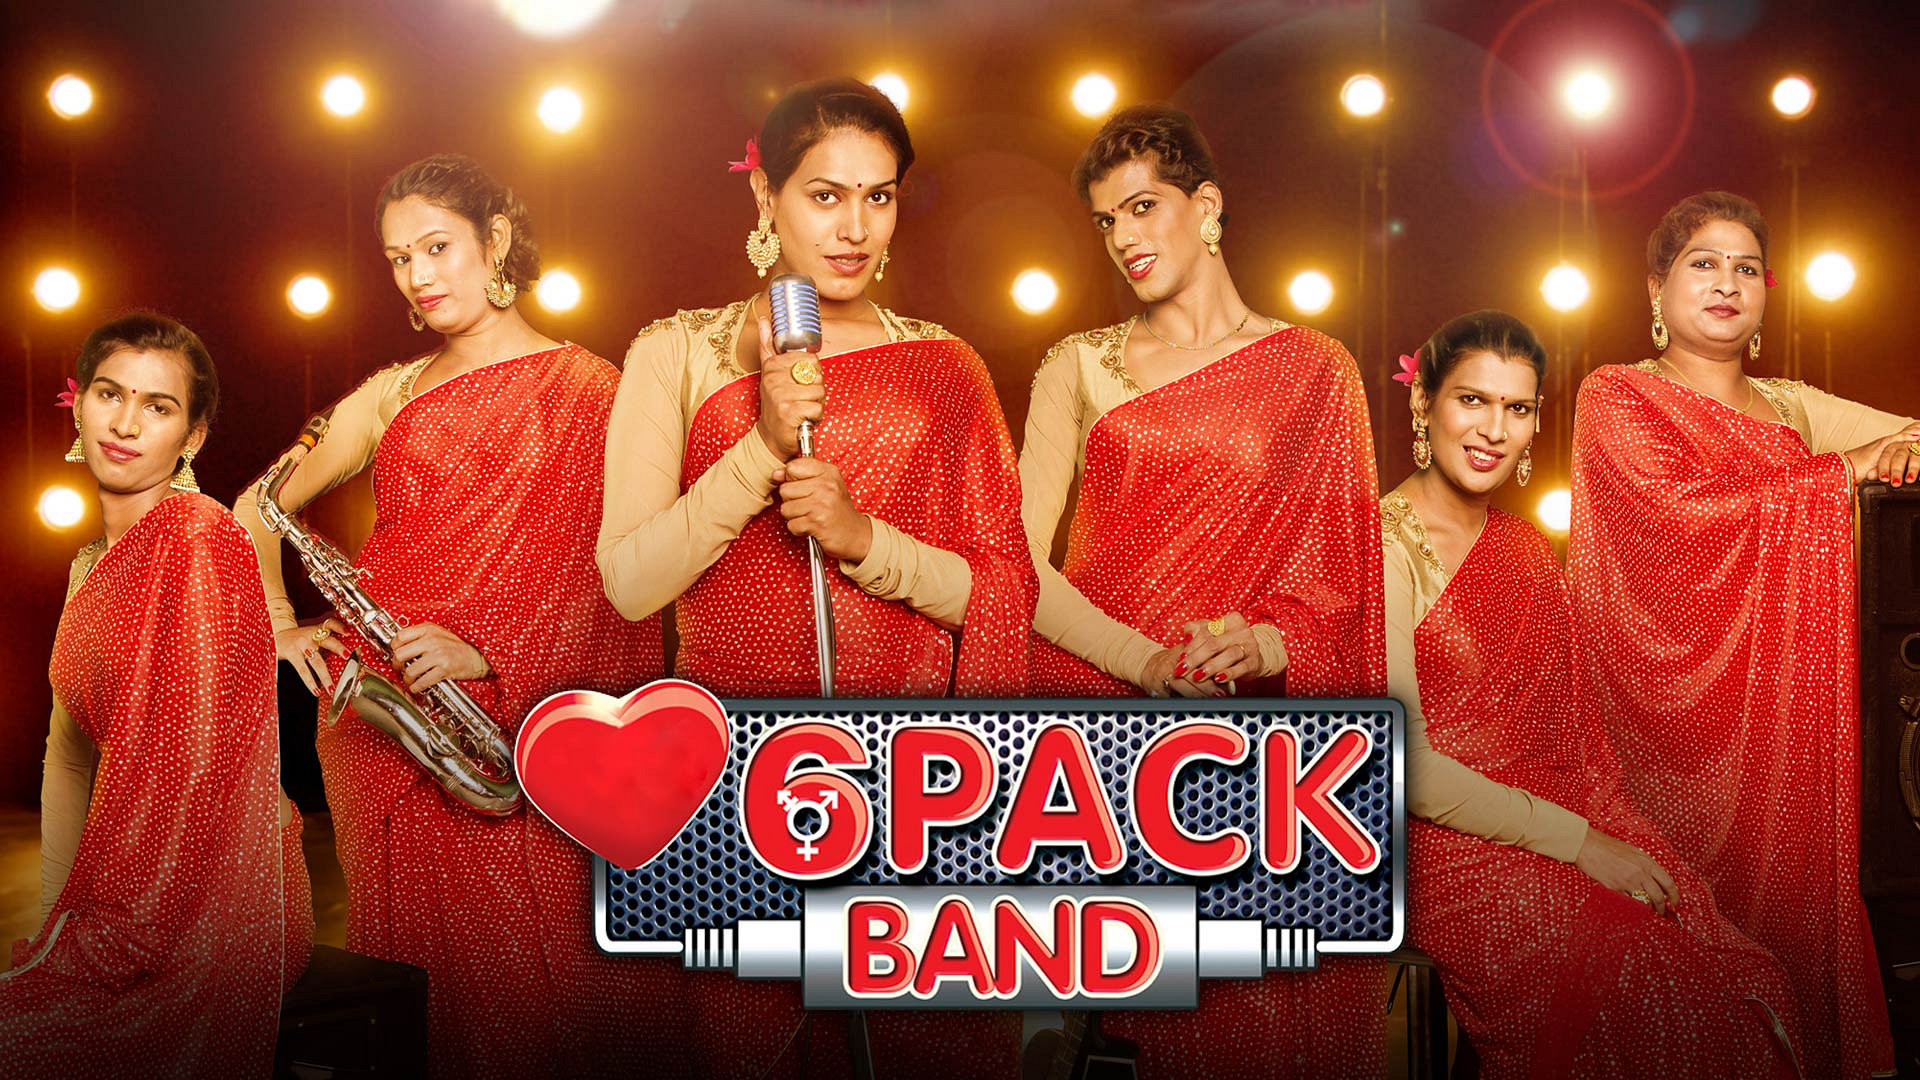 6 Pack Band - Sab Rab De Bande